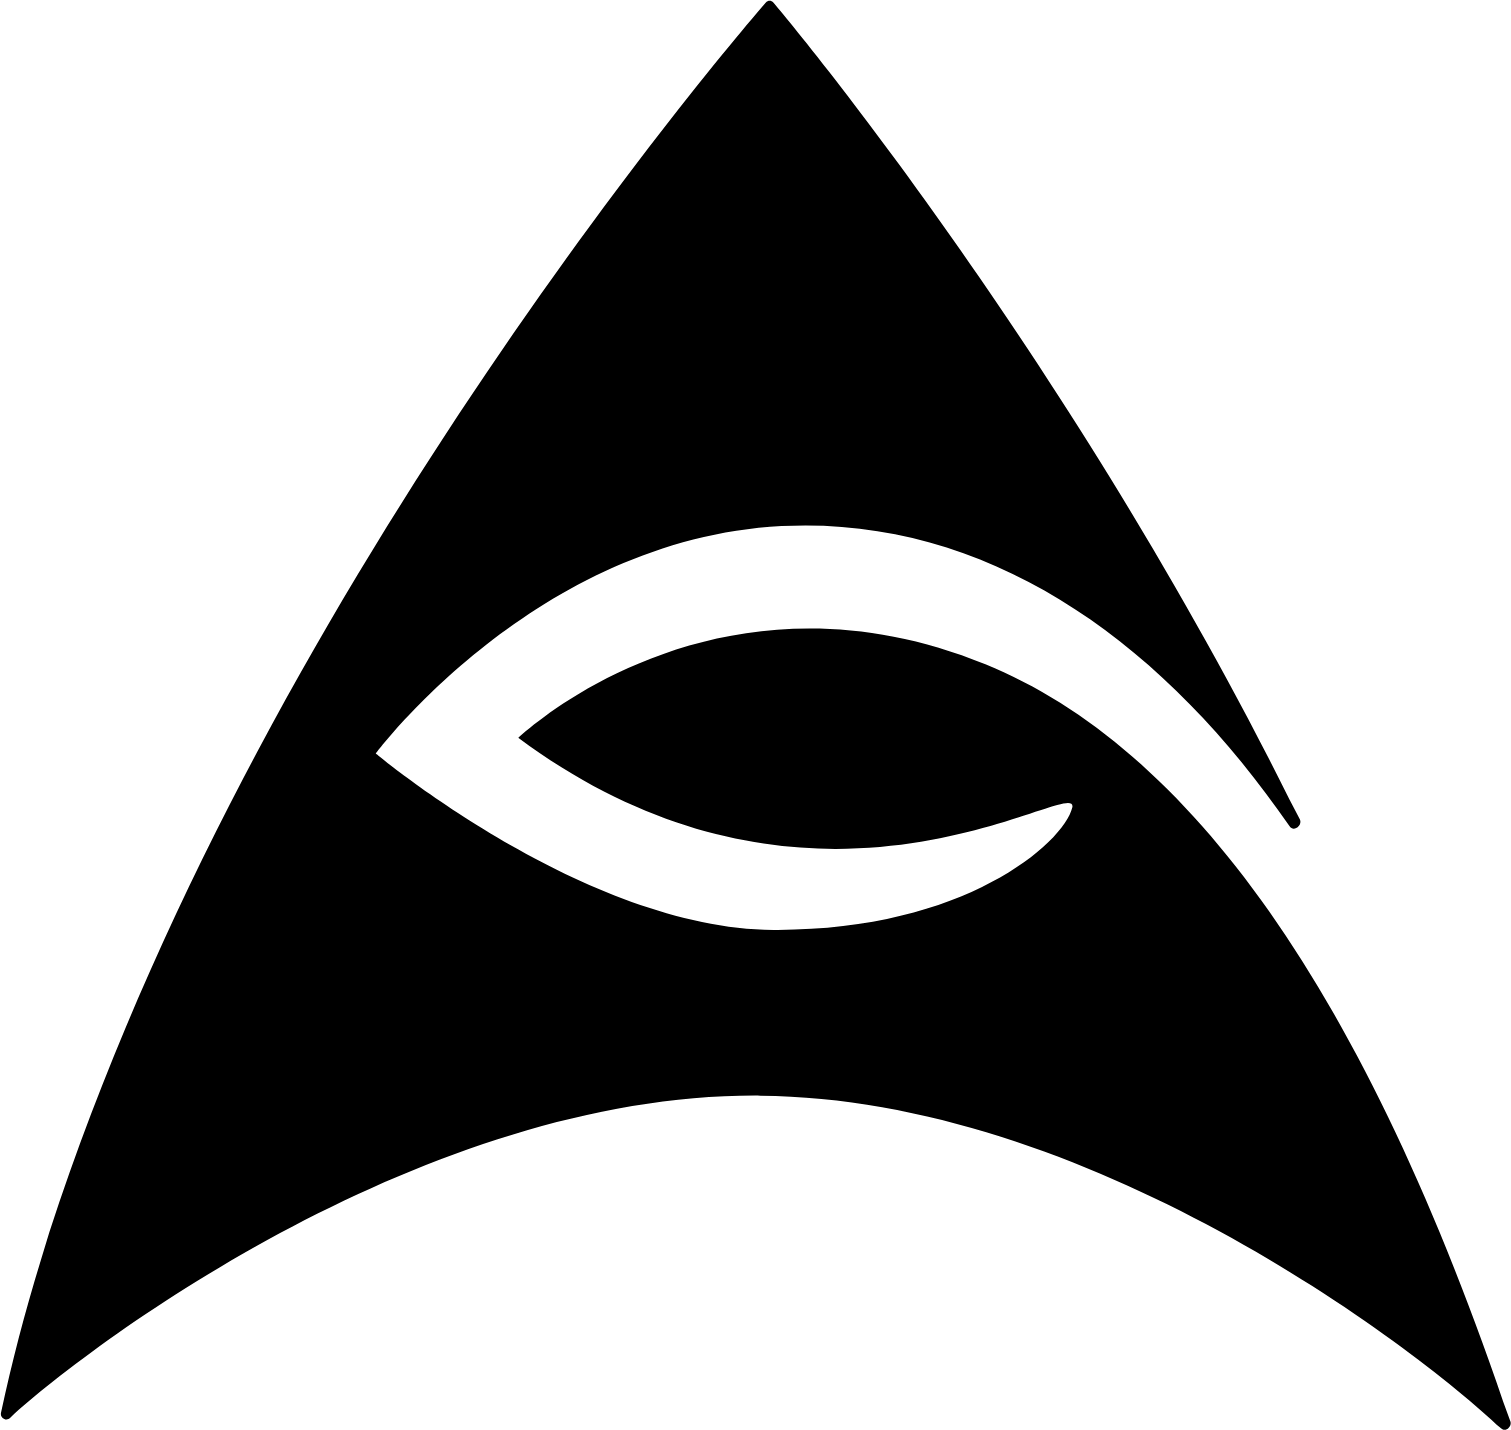 AEye logo (transparent PNG)